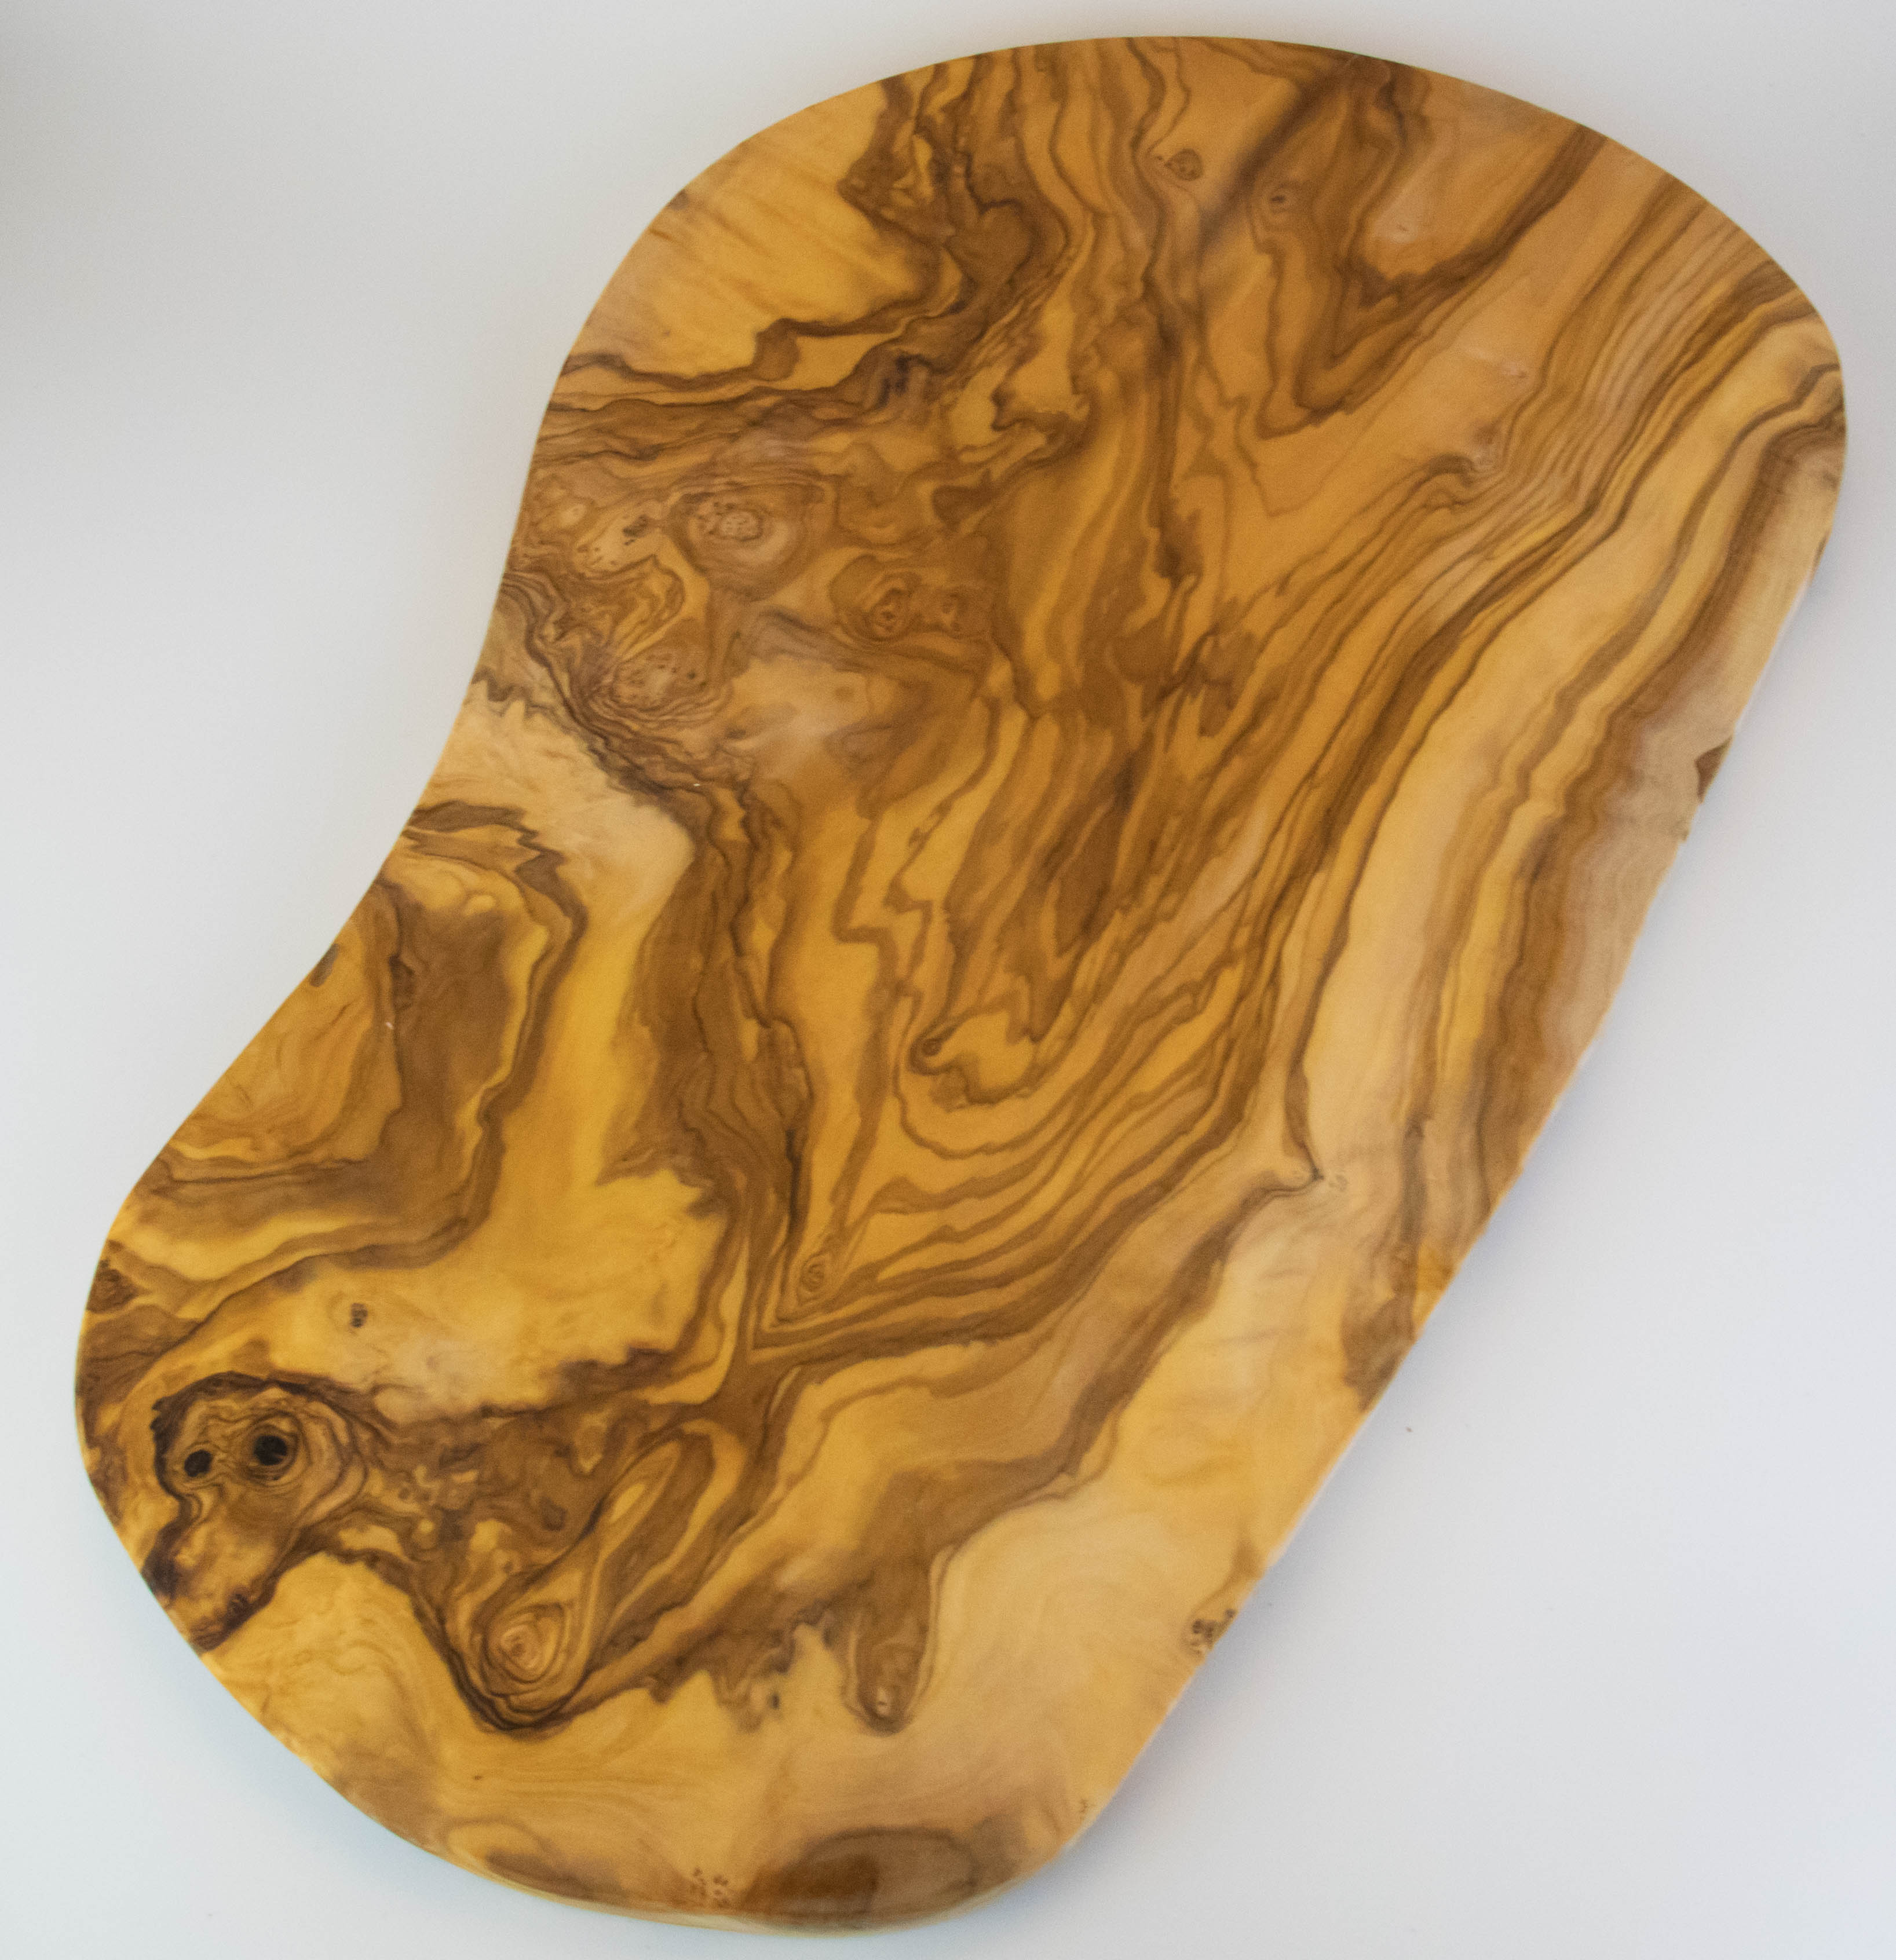 Grande e rustico tagliere in legno d'olivo della lunghezza di 55-60 cm.